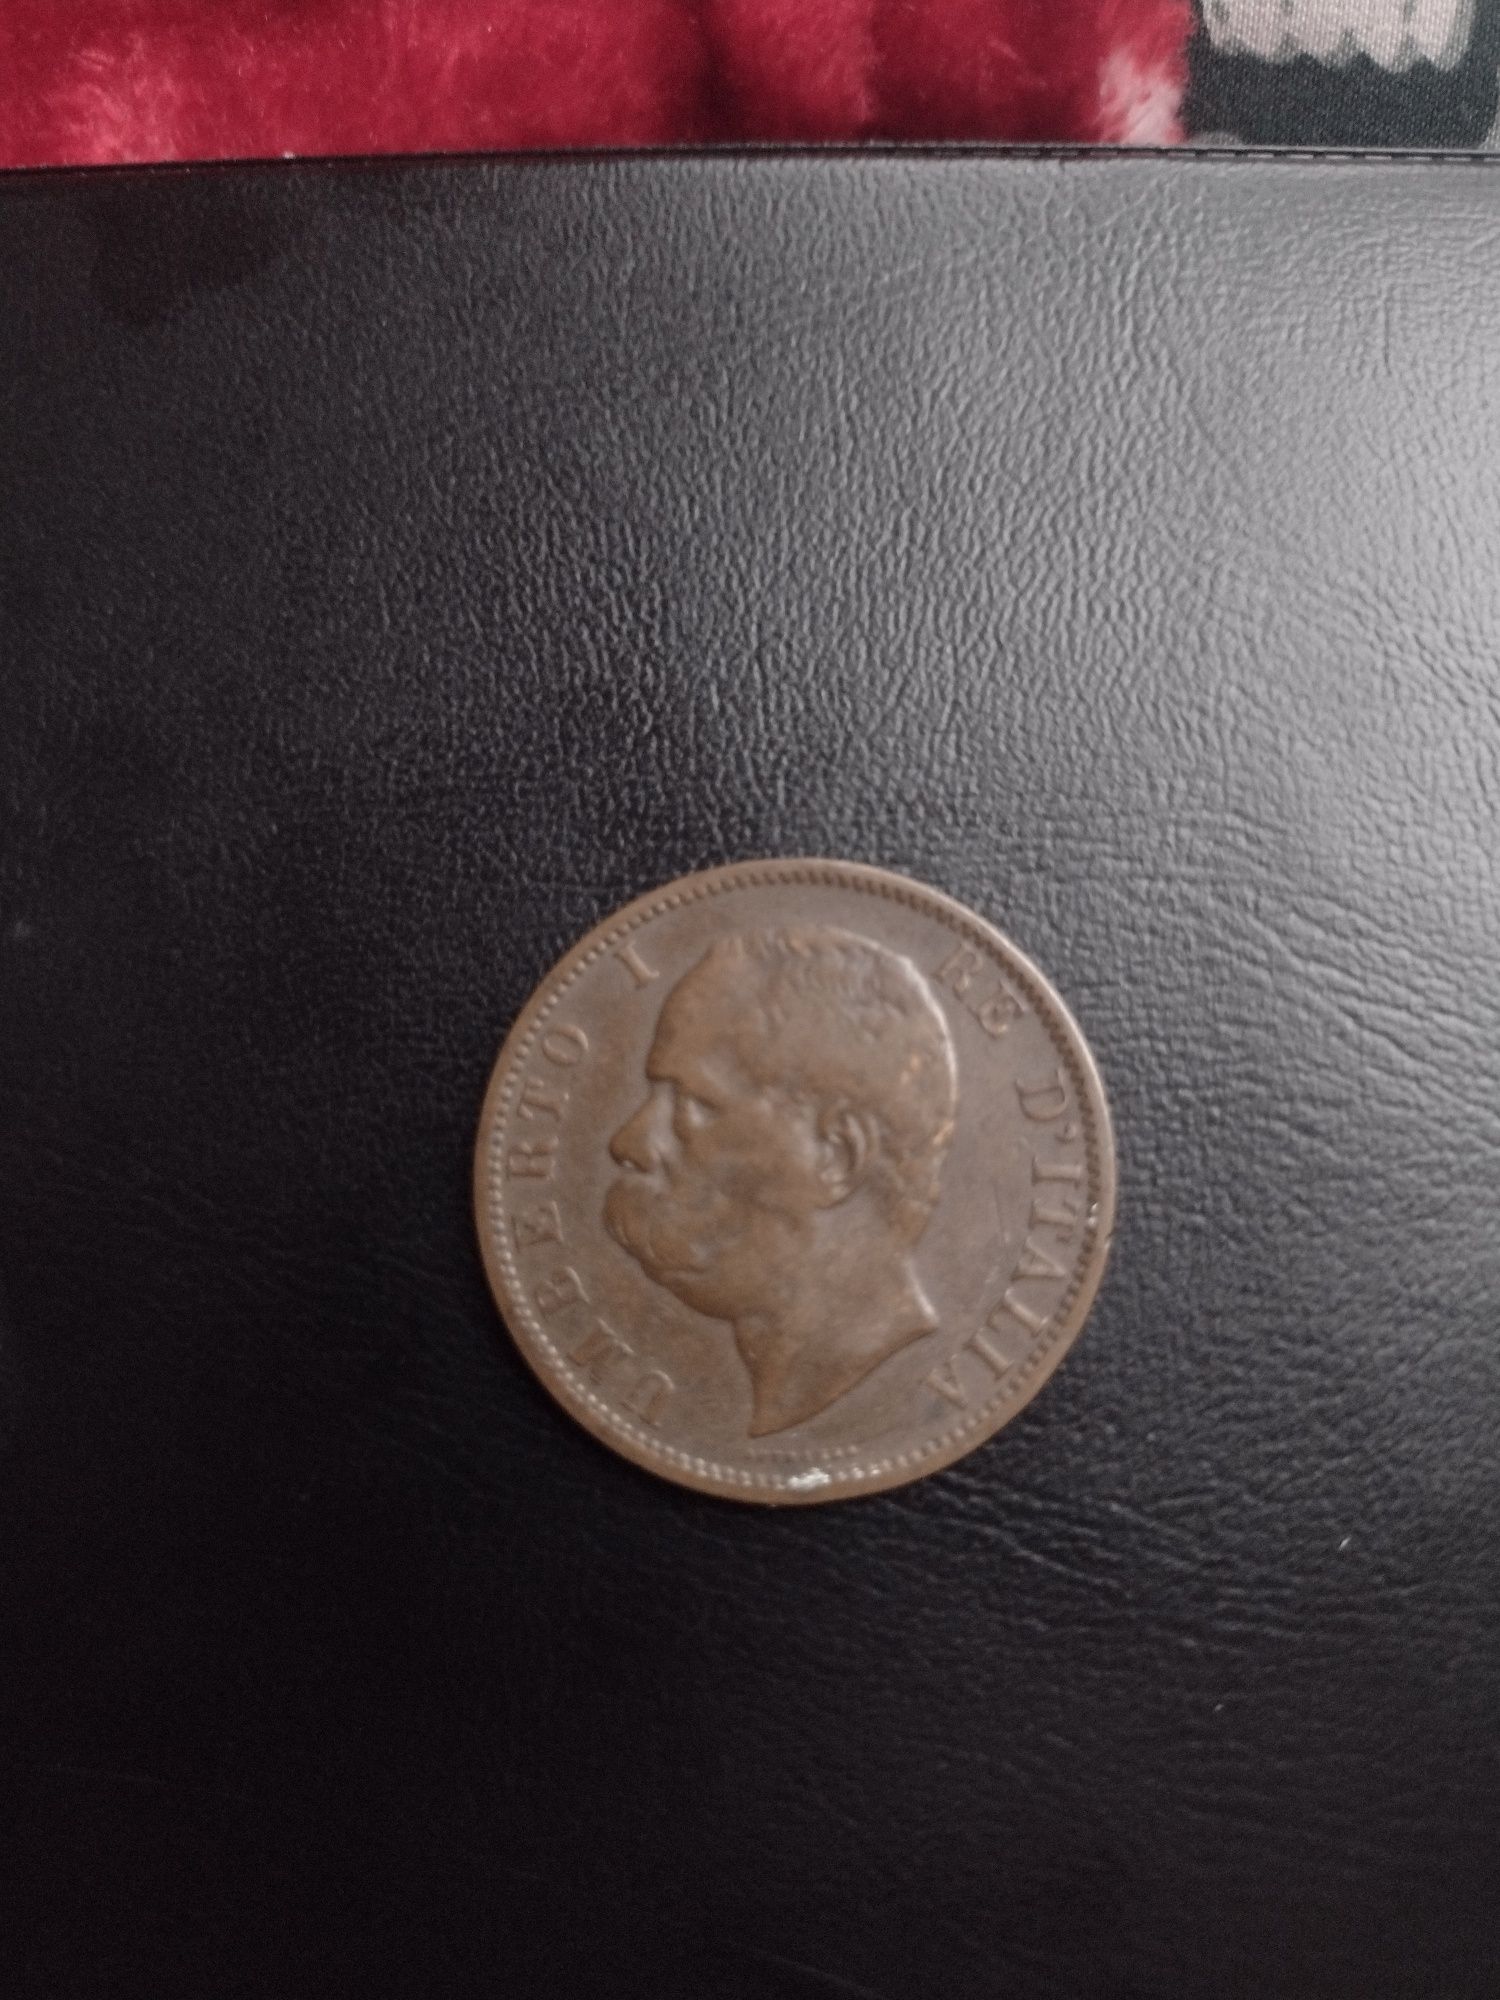 10 centesimi Włochy 1894